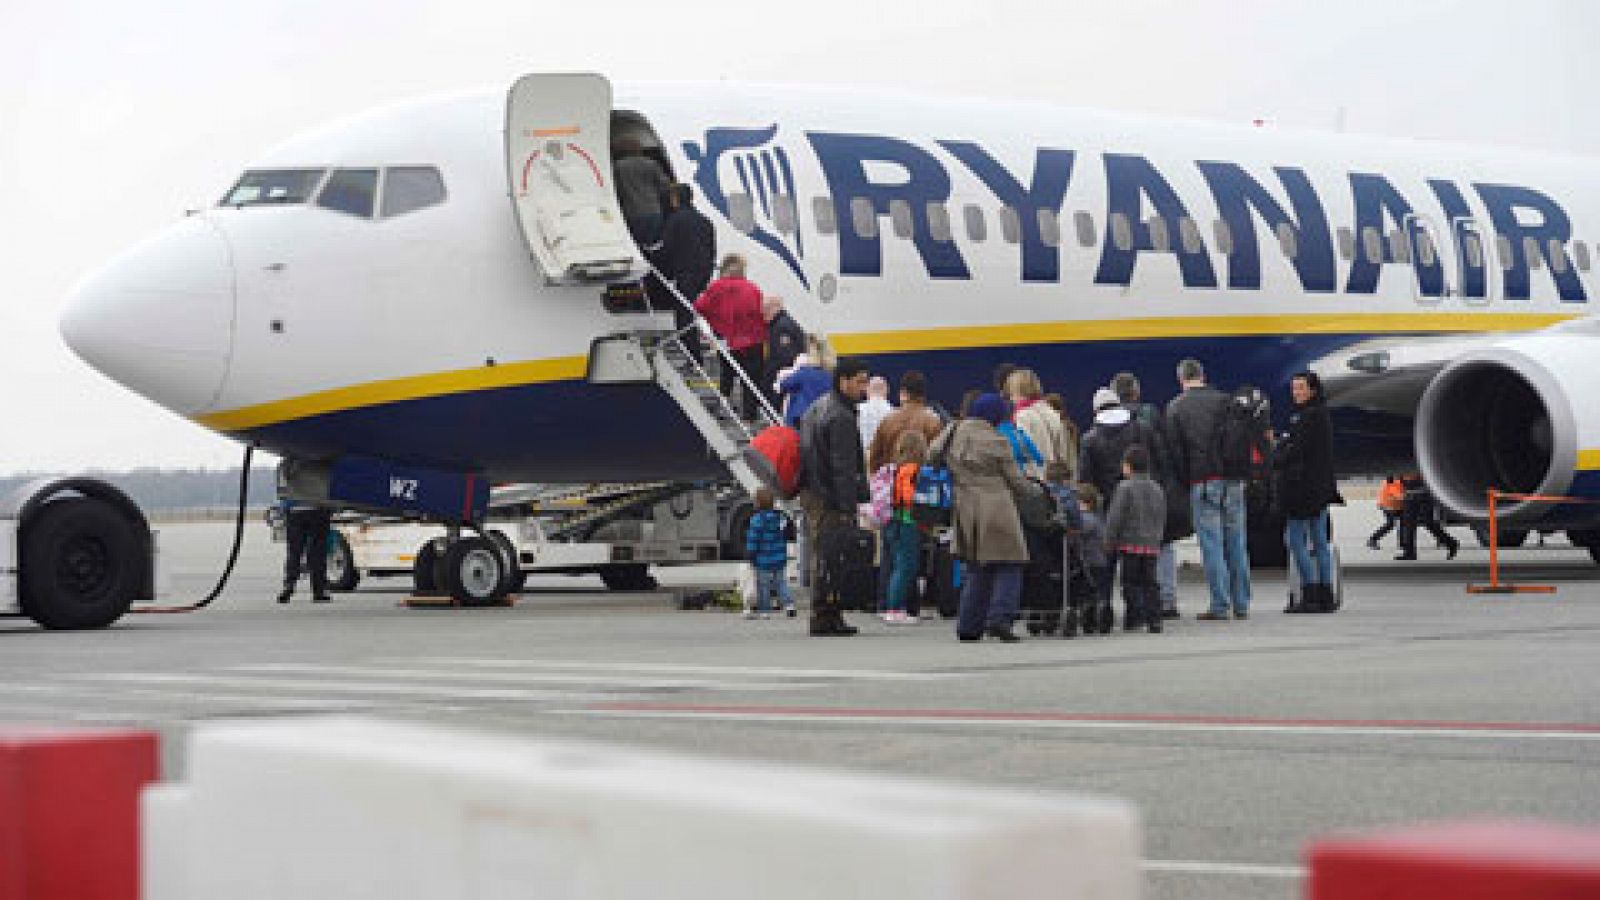 Cuánto cobra Ryanair por maleta en cabina?